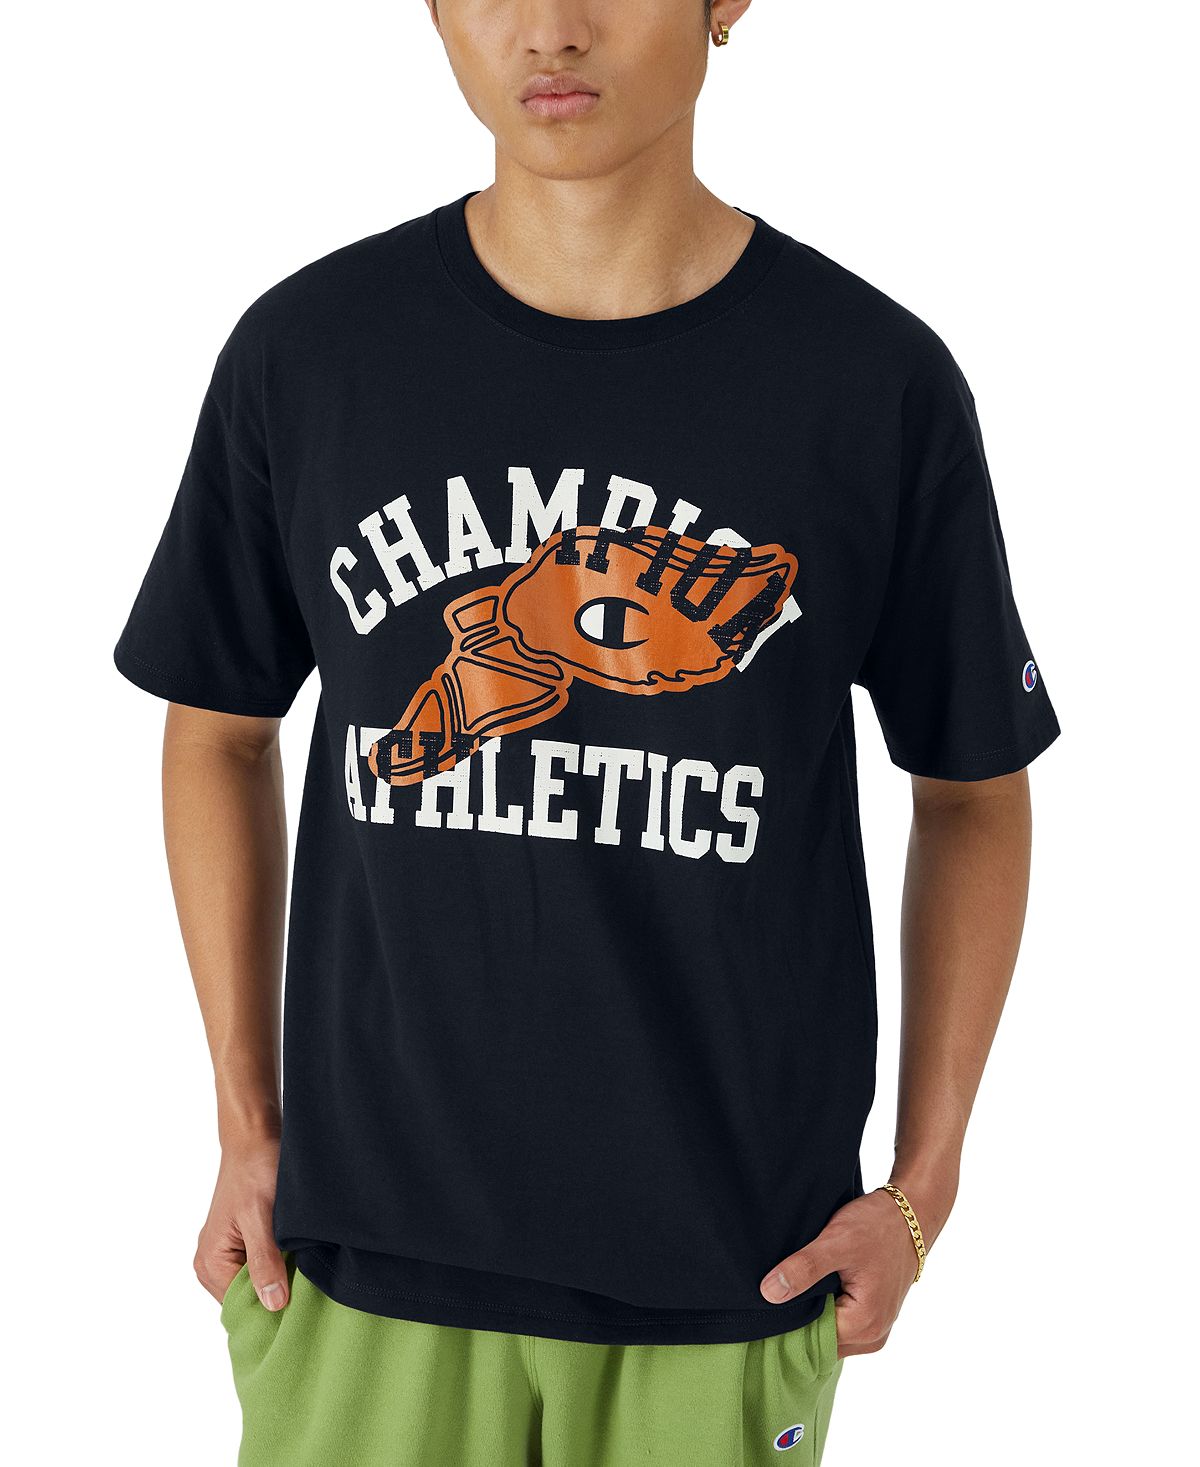 Мужская классическая футболка с графическим логотипом Champion